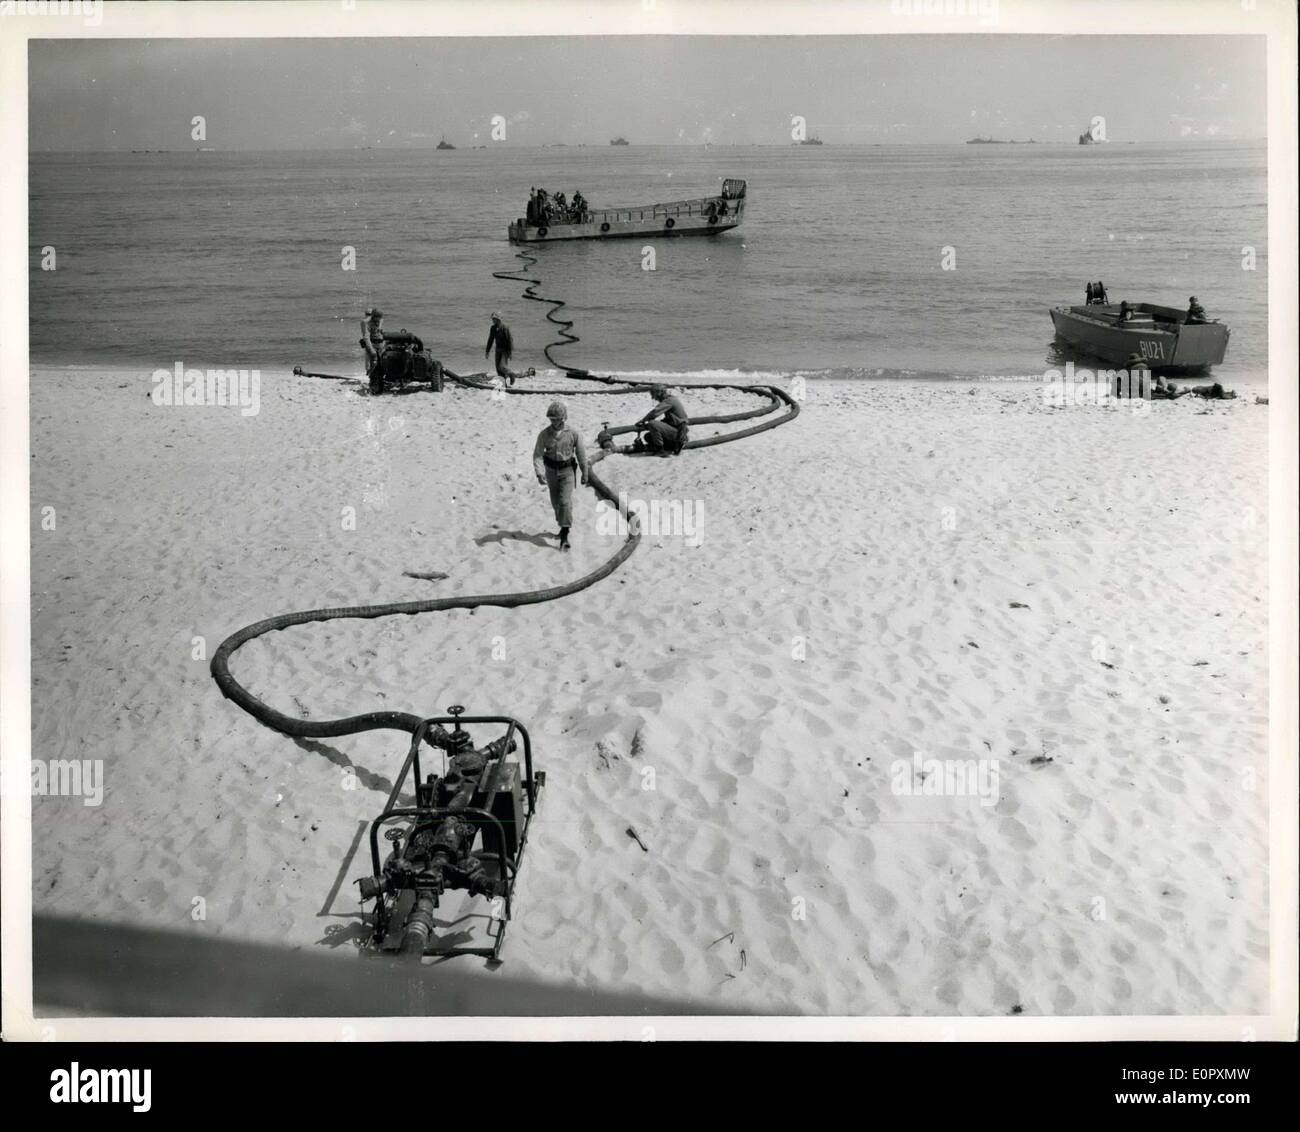 24 avril 1957 - Marine Corps de carburant en vrac : système amphibie de la marine UN LCVP permet de brancher les conduites de carburant soutenue à une station de déchargement de vrac beach, permettant un flux constant de l'essence d'un navire se trouvant à la station. Banque D'Images